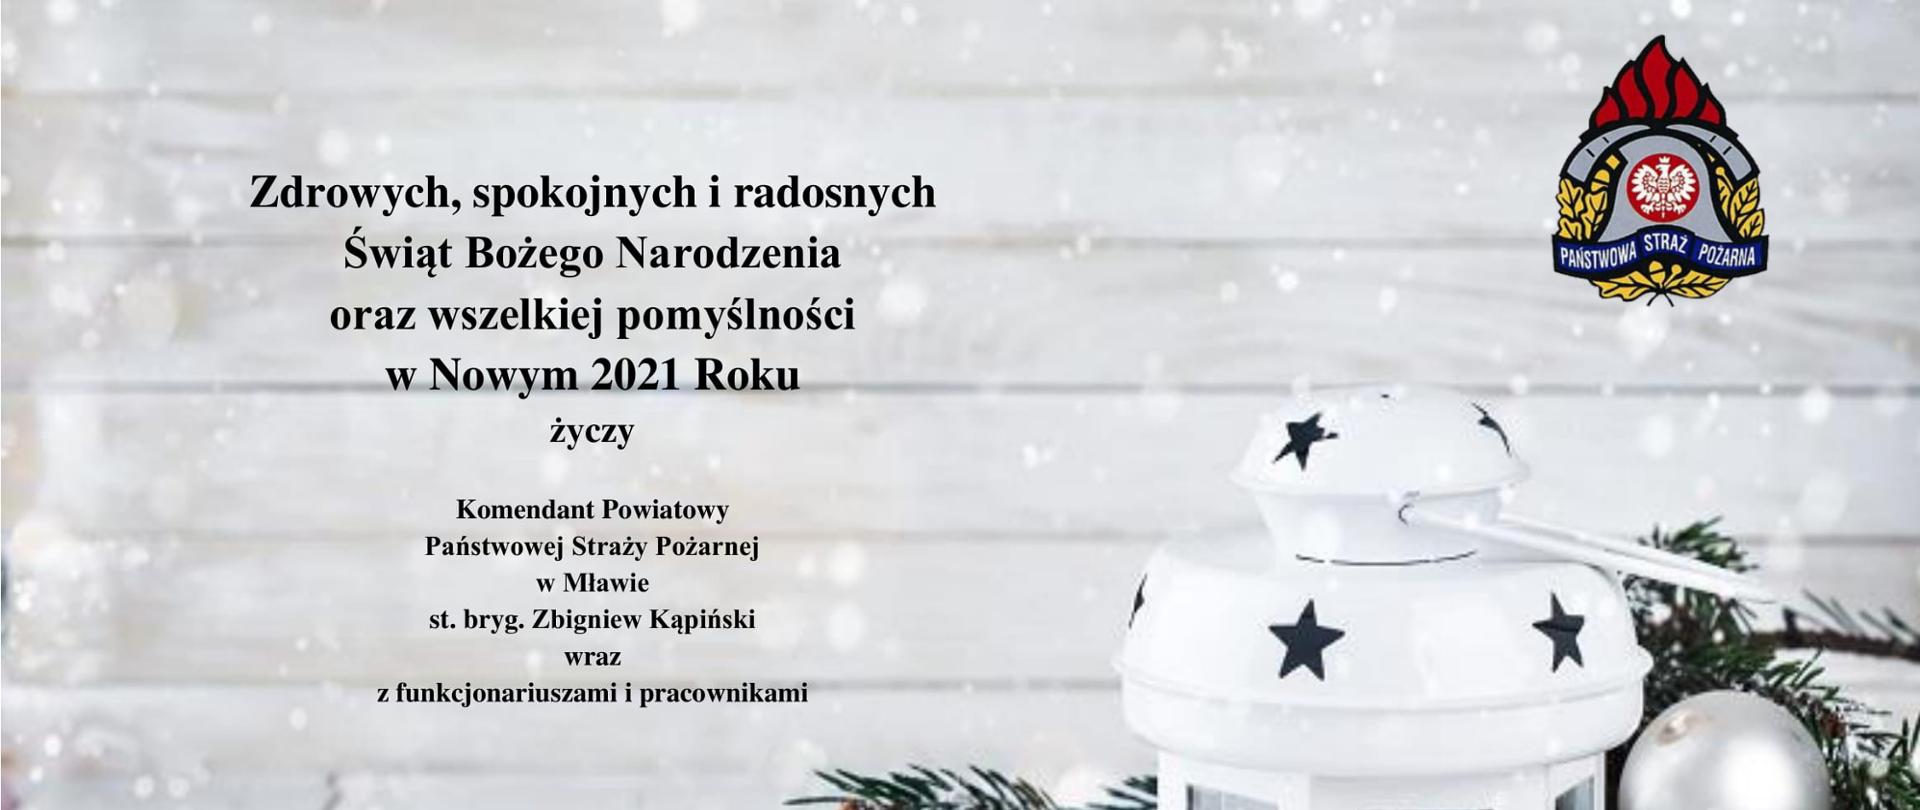 Na zdjęciu z lampionem świątecznym znajdują się życzenia świąteczne od Komendanta Powiatowego PSP w Mławie.